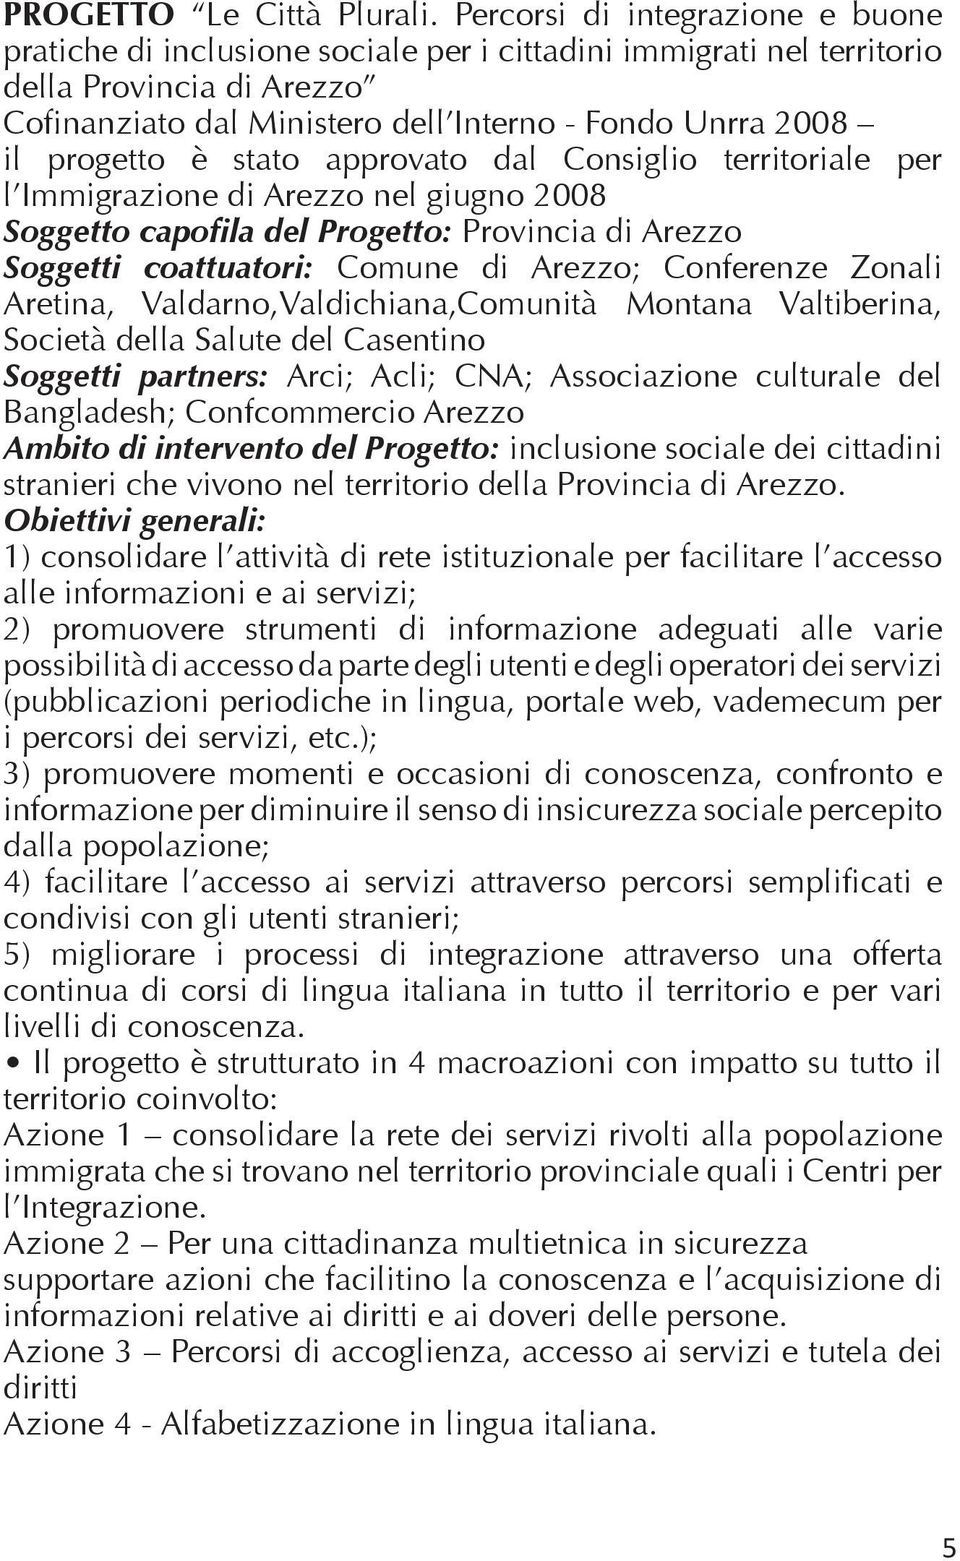 progetto è stato approvato dal Consiglio territoriale per l Immigrazione di Arezzo nel giugno 2008 Soggetto capofila del Progetto: Provincia di Arezzo Soggetti coattuatori: Comune di Arezzo;